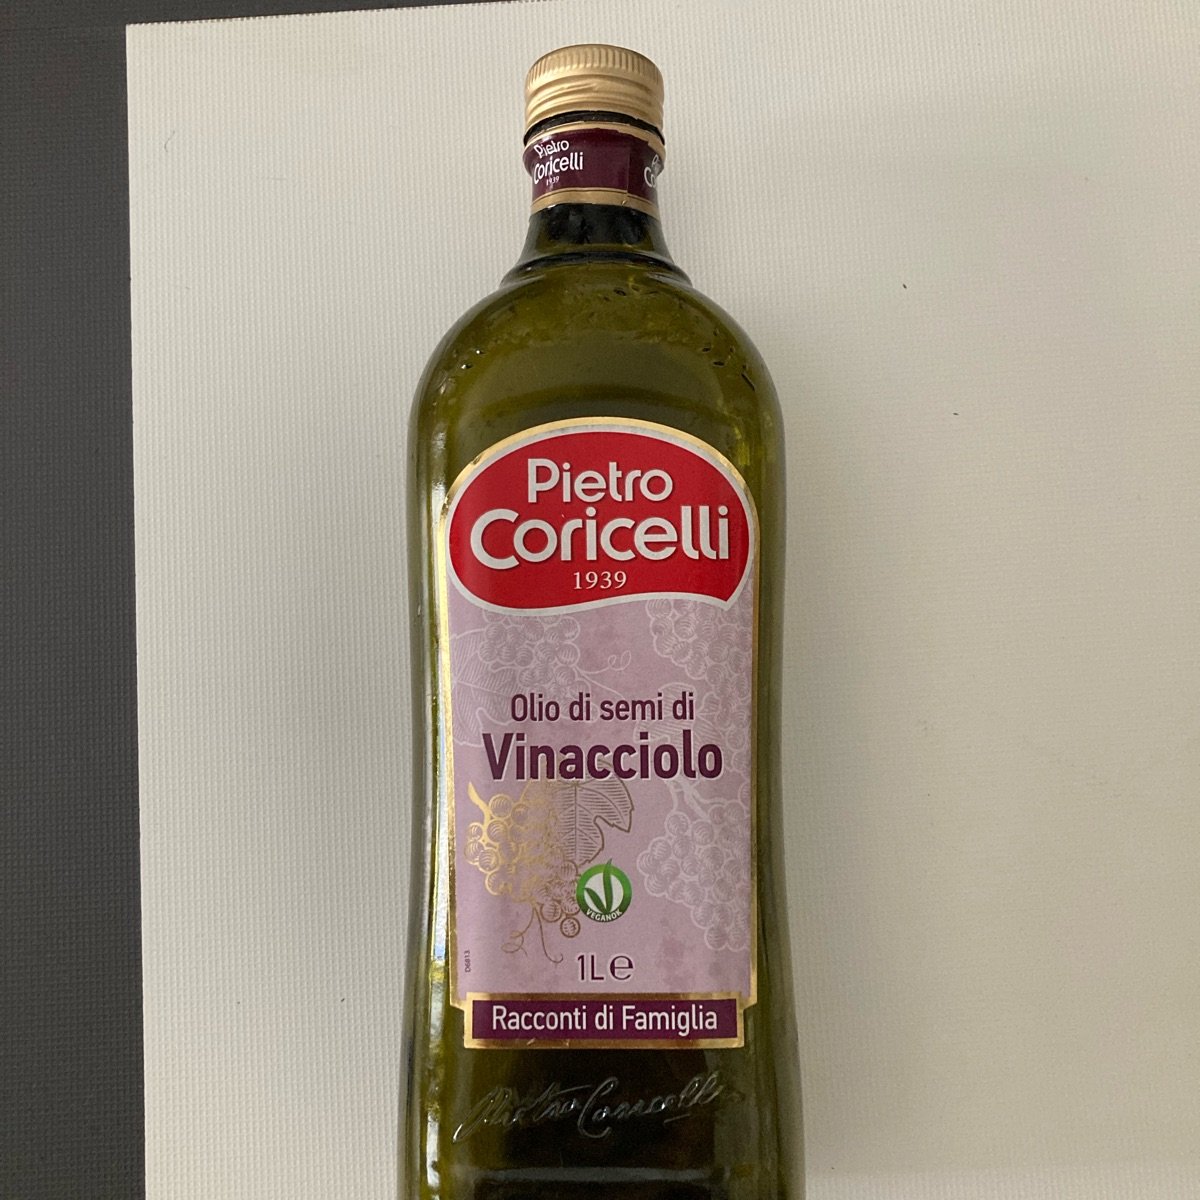 Pietro Coricelli Olio Di Semi Di Vinacciolo Review | abillion